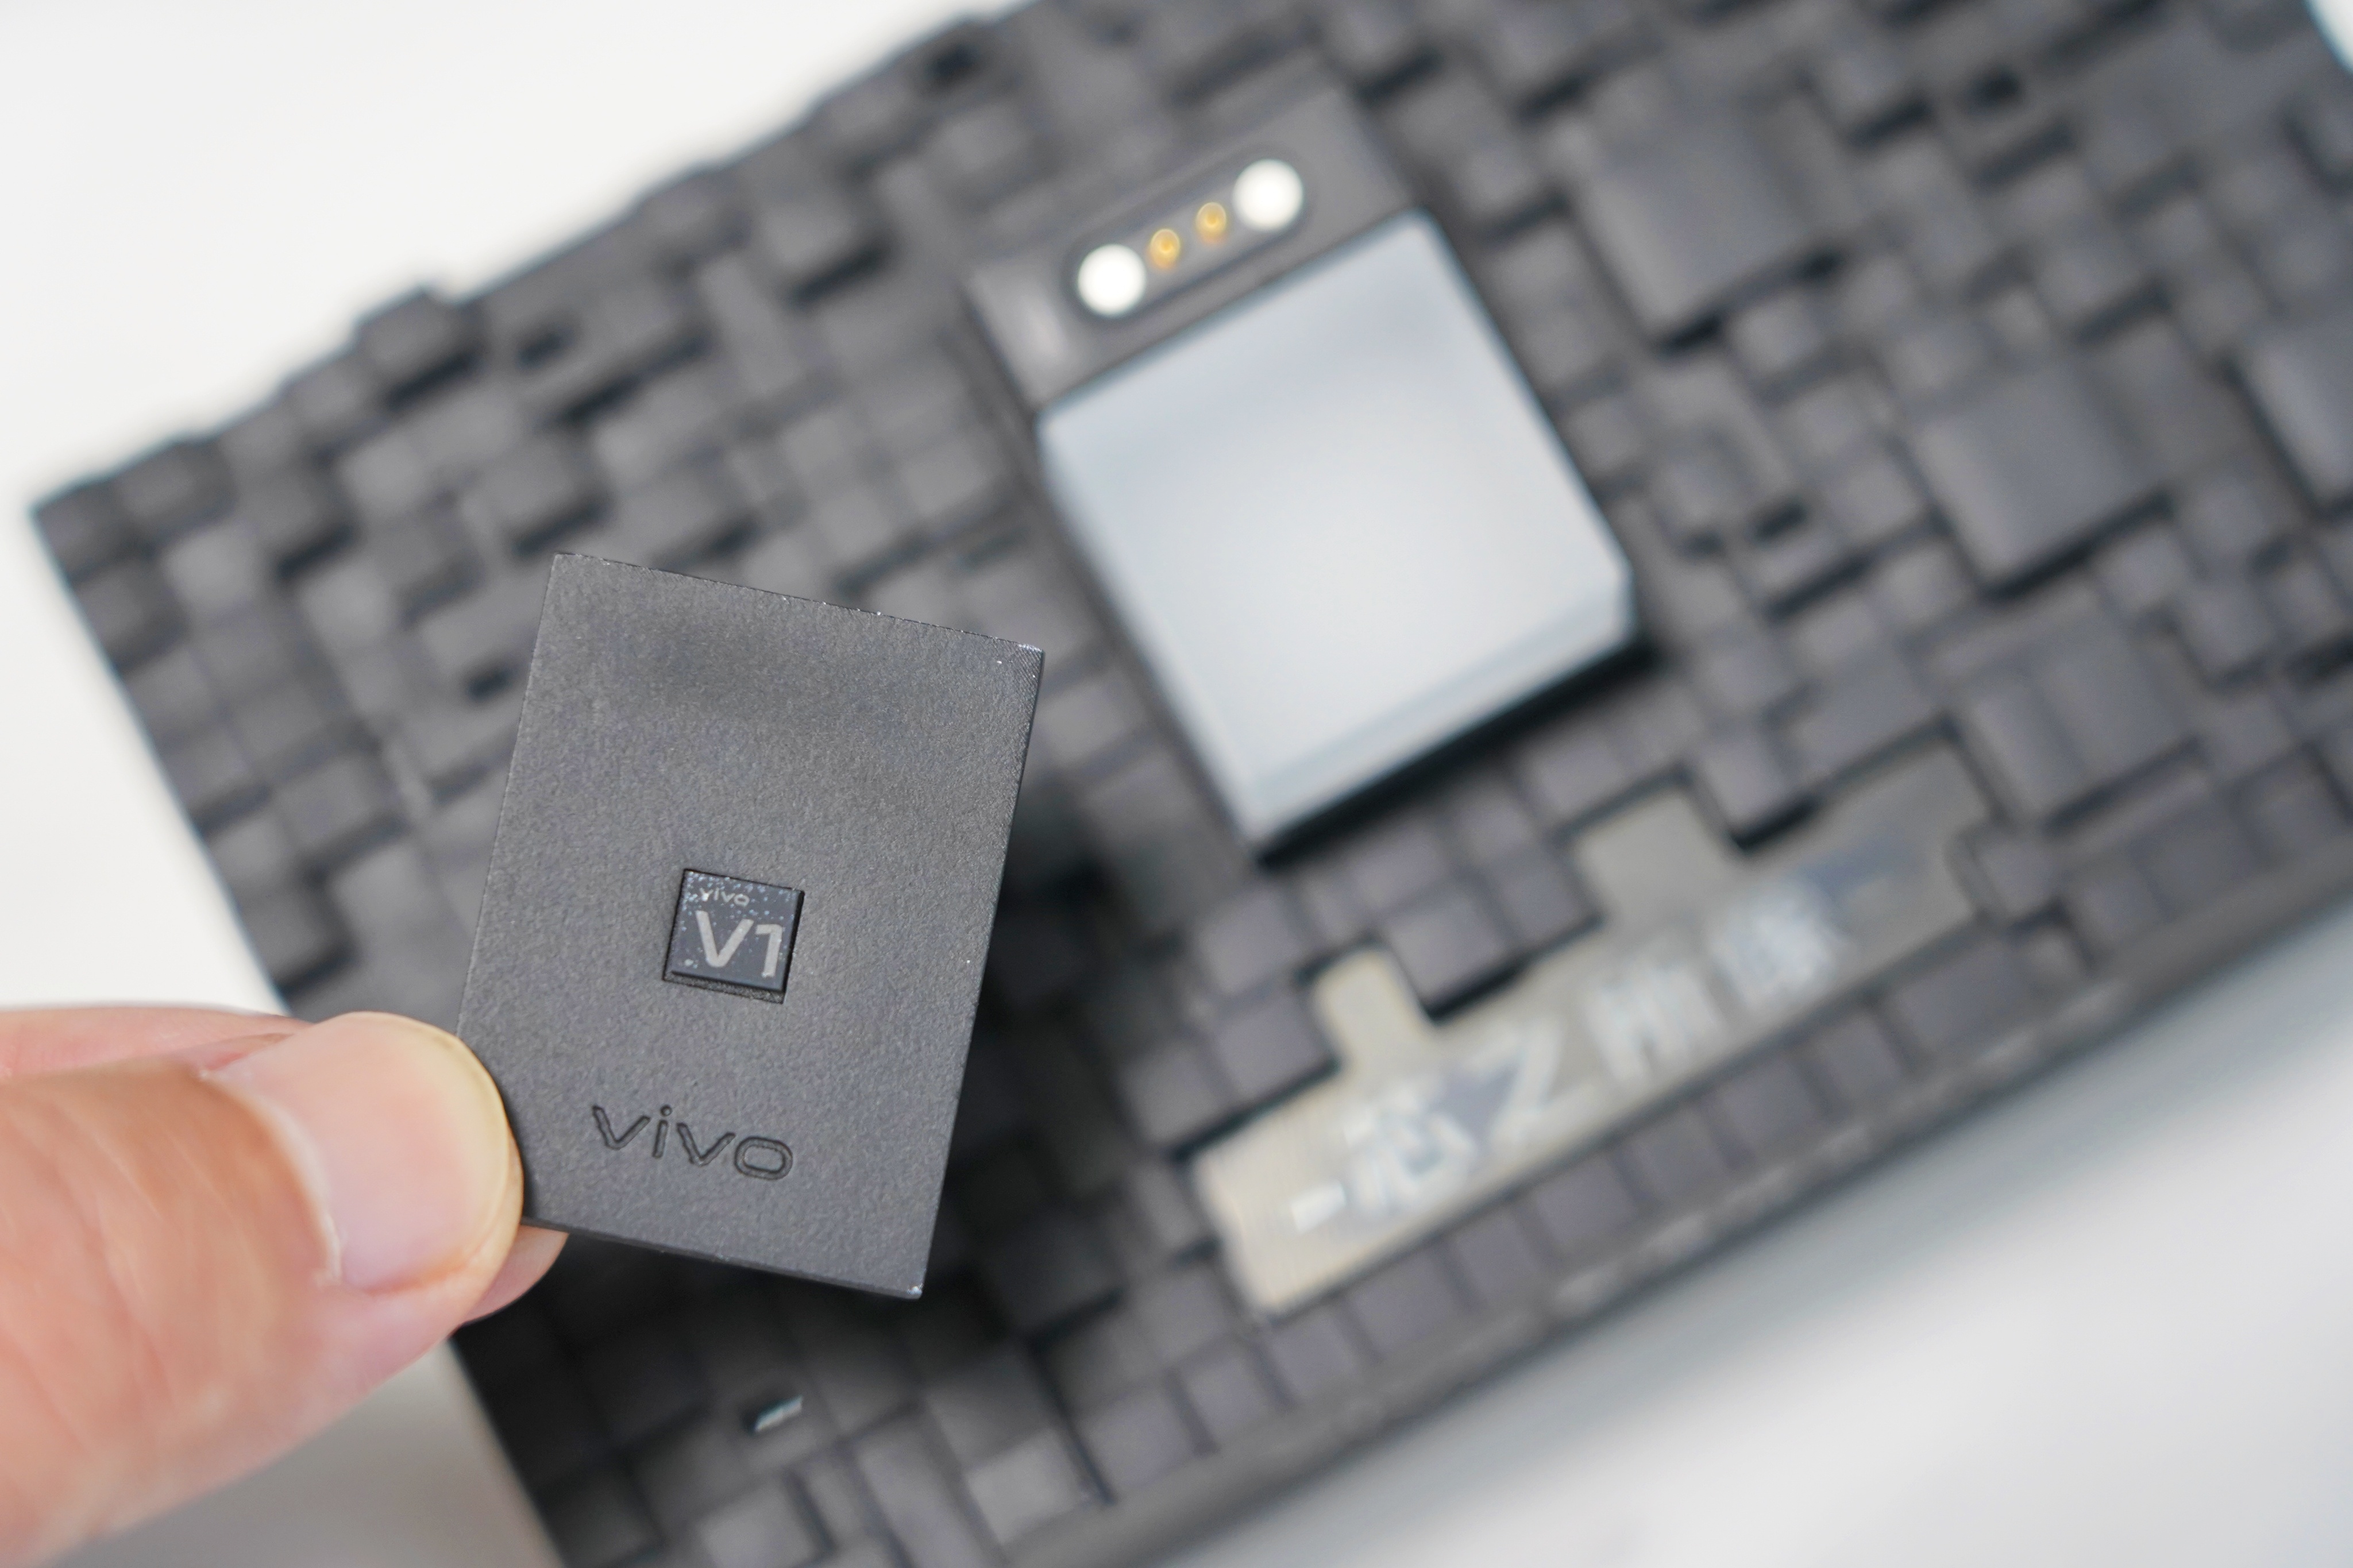 Vivo announces Vivo V1 proprietary image processor